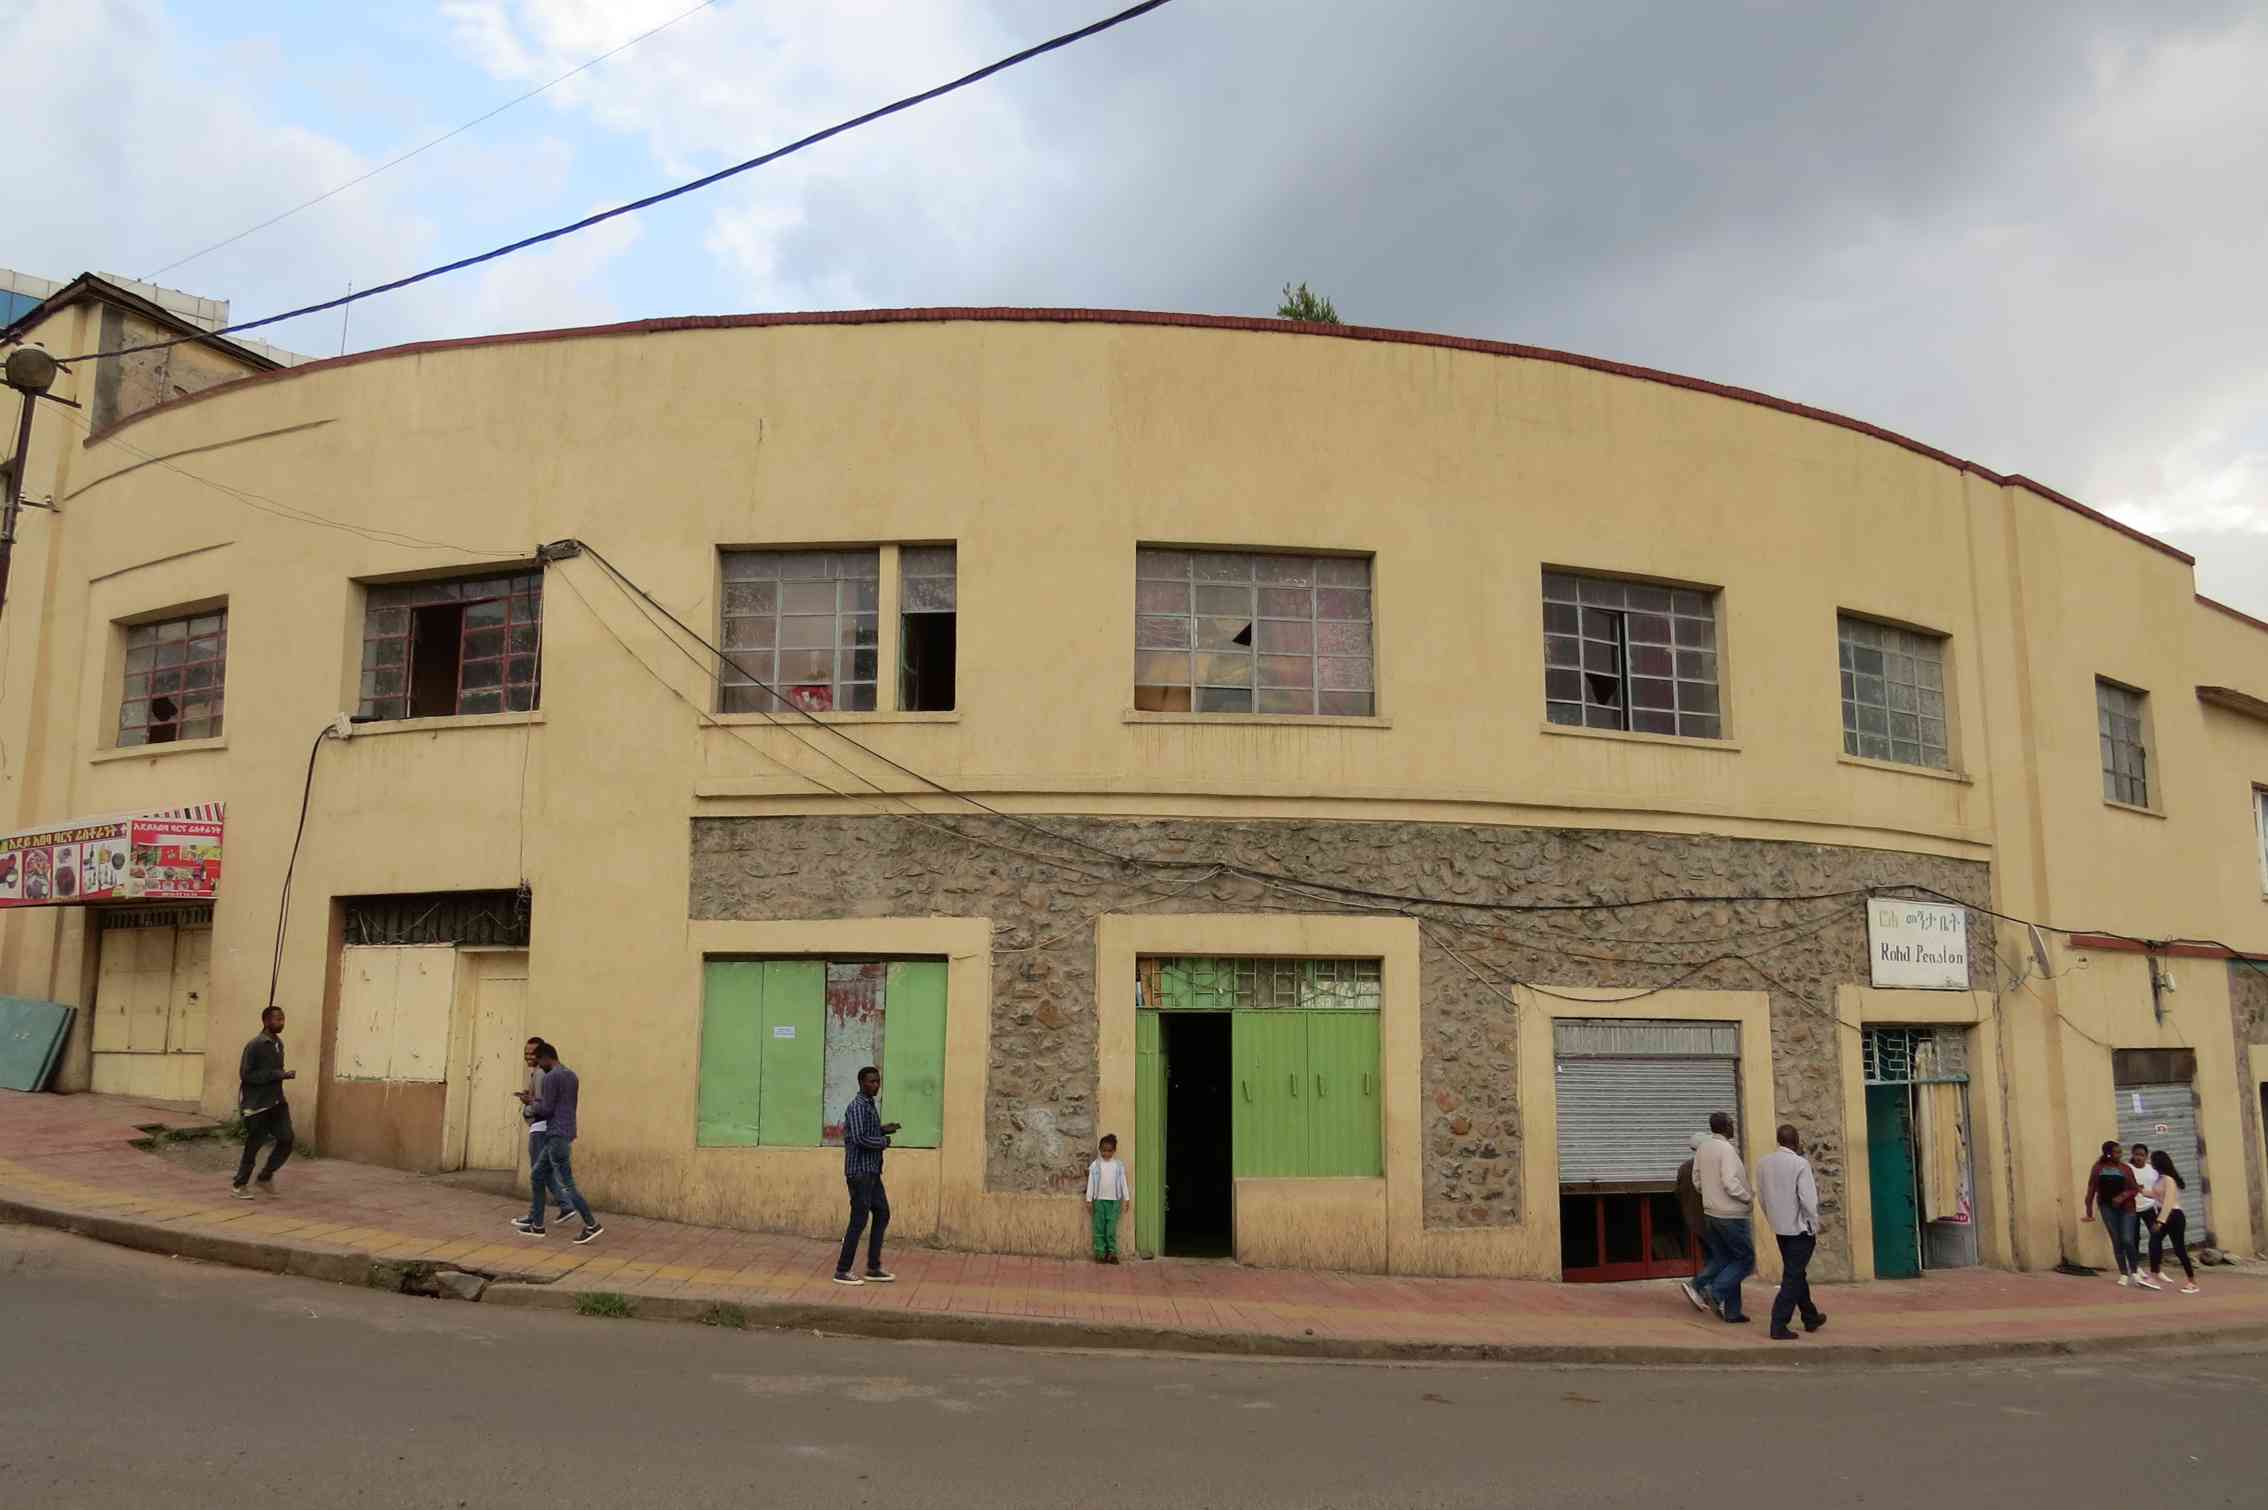 Arquitectura racionalista en el reino de saba. La ciudad de Gondar en Etiopía